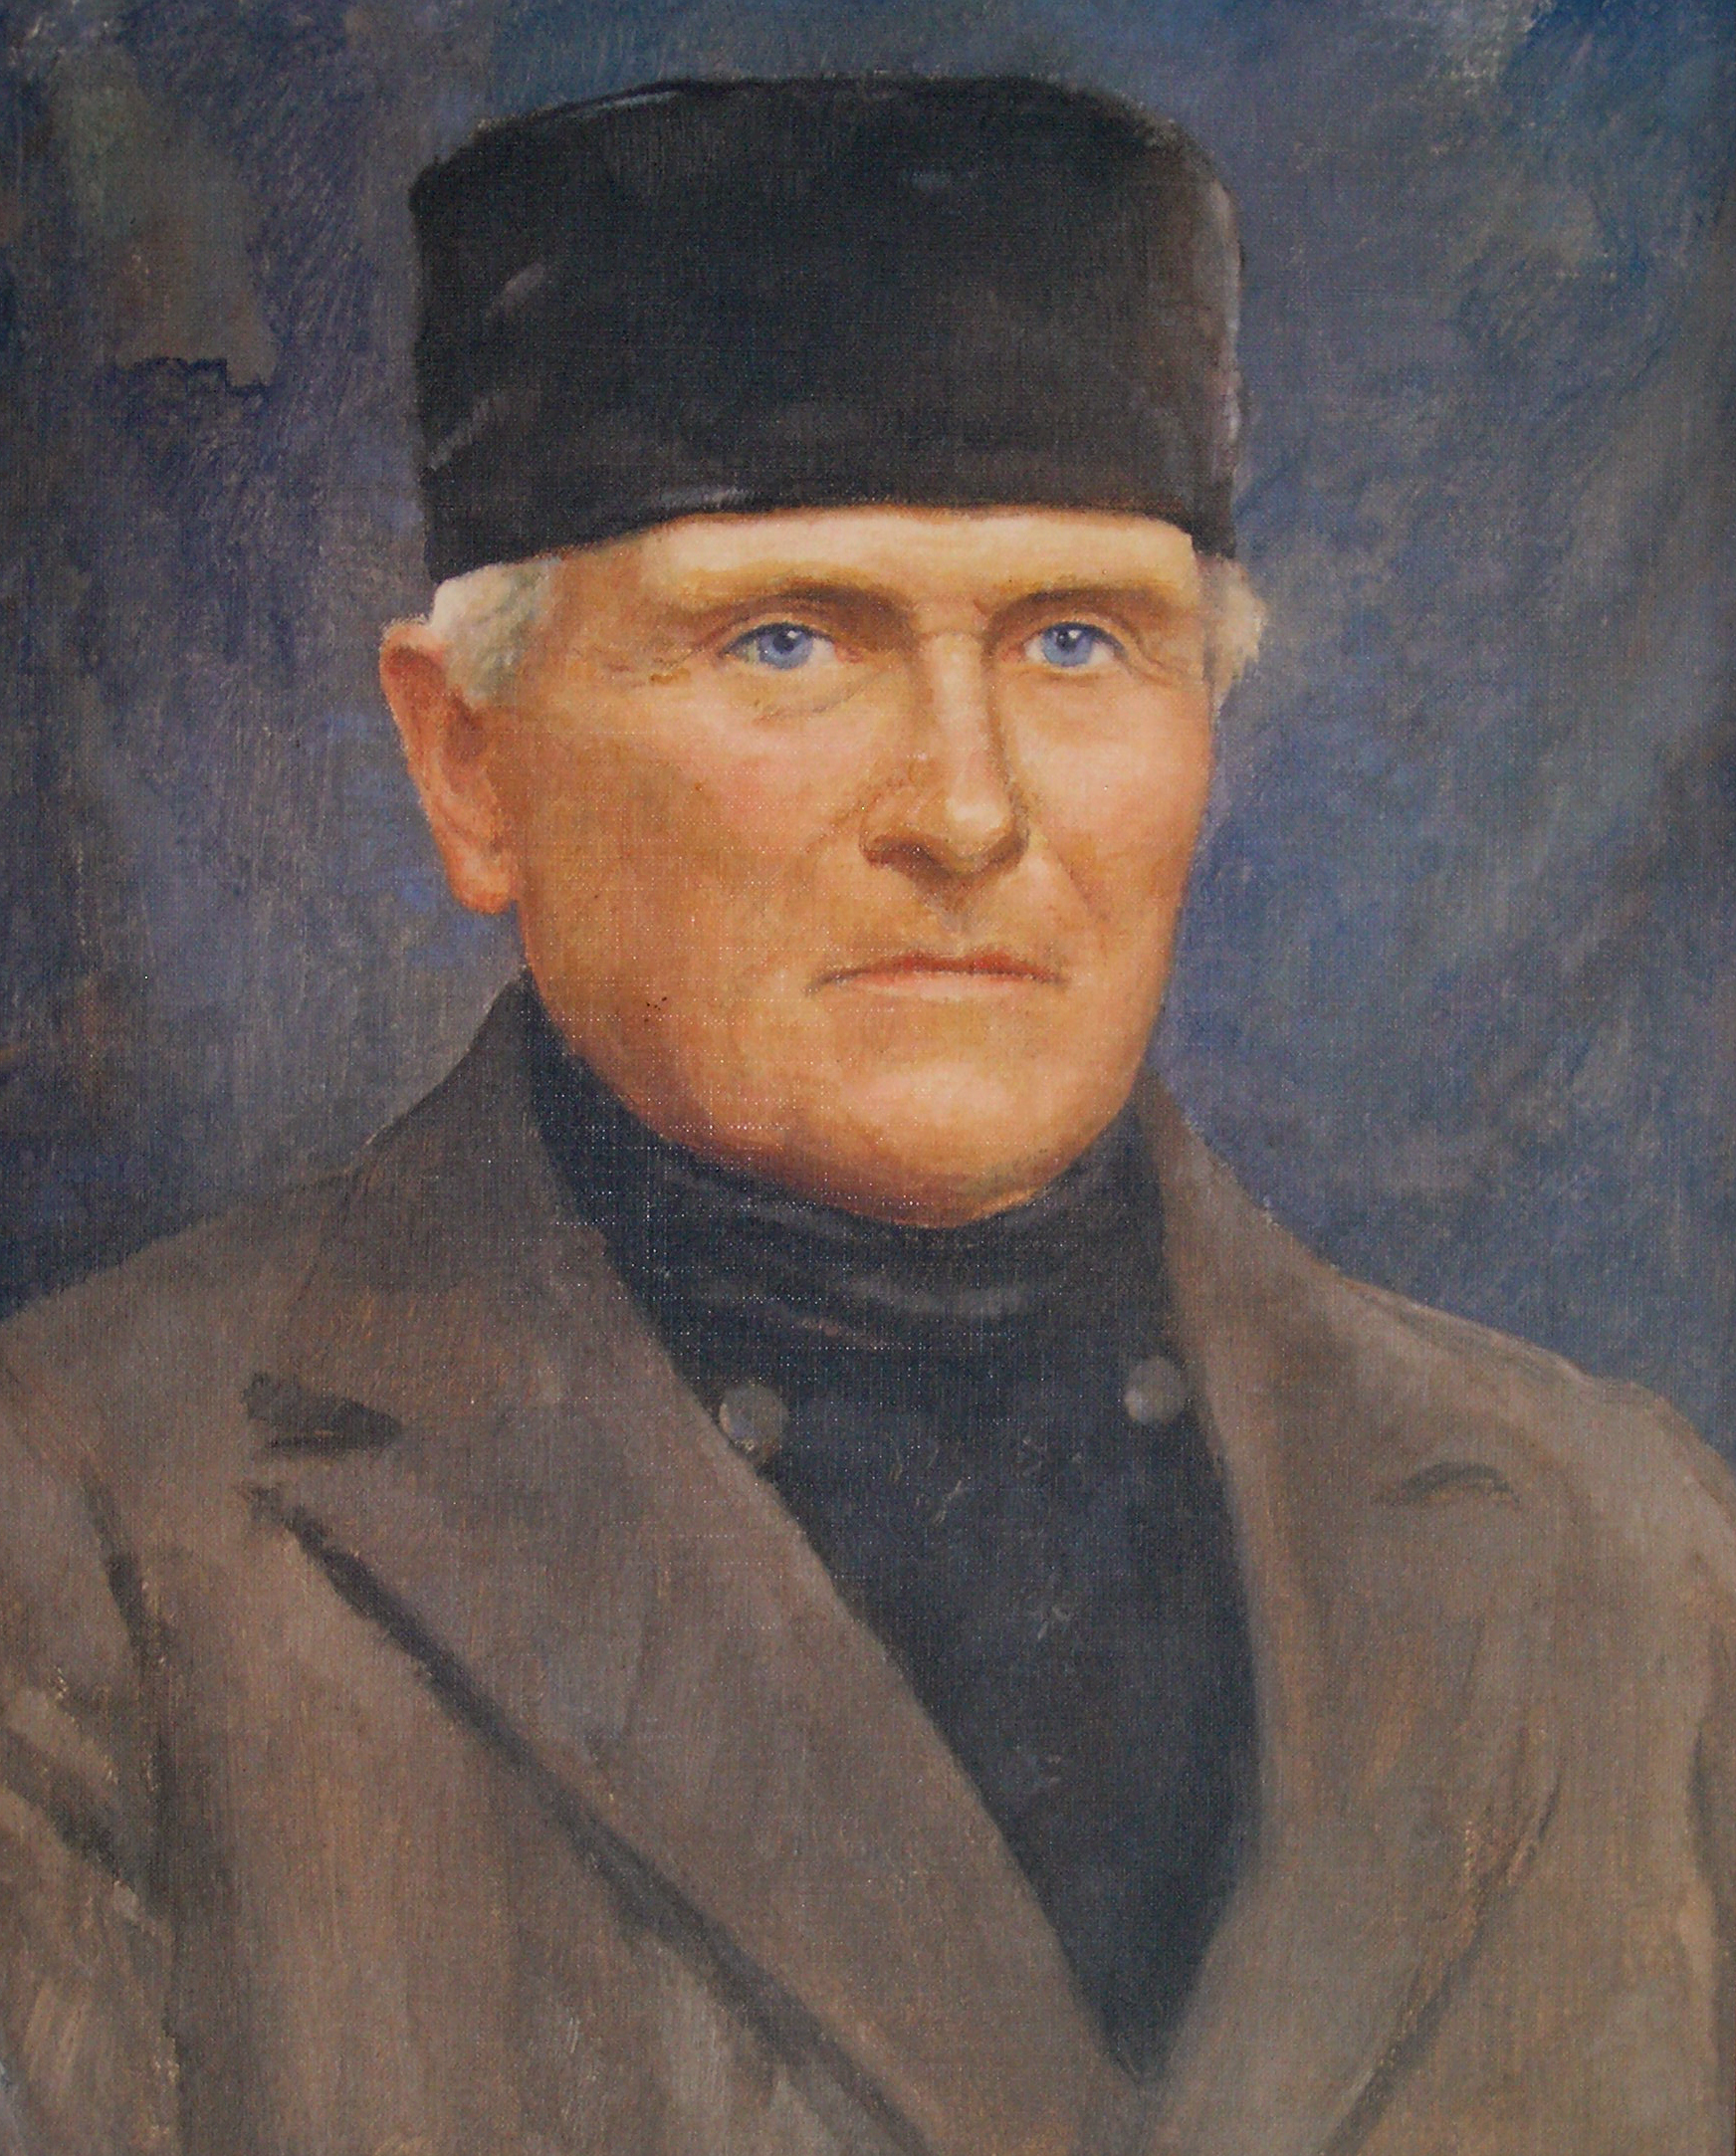 Kompānijas dibinātājs Matiass Kristians Rabbethge (1804 - 1902)